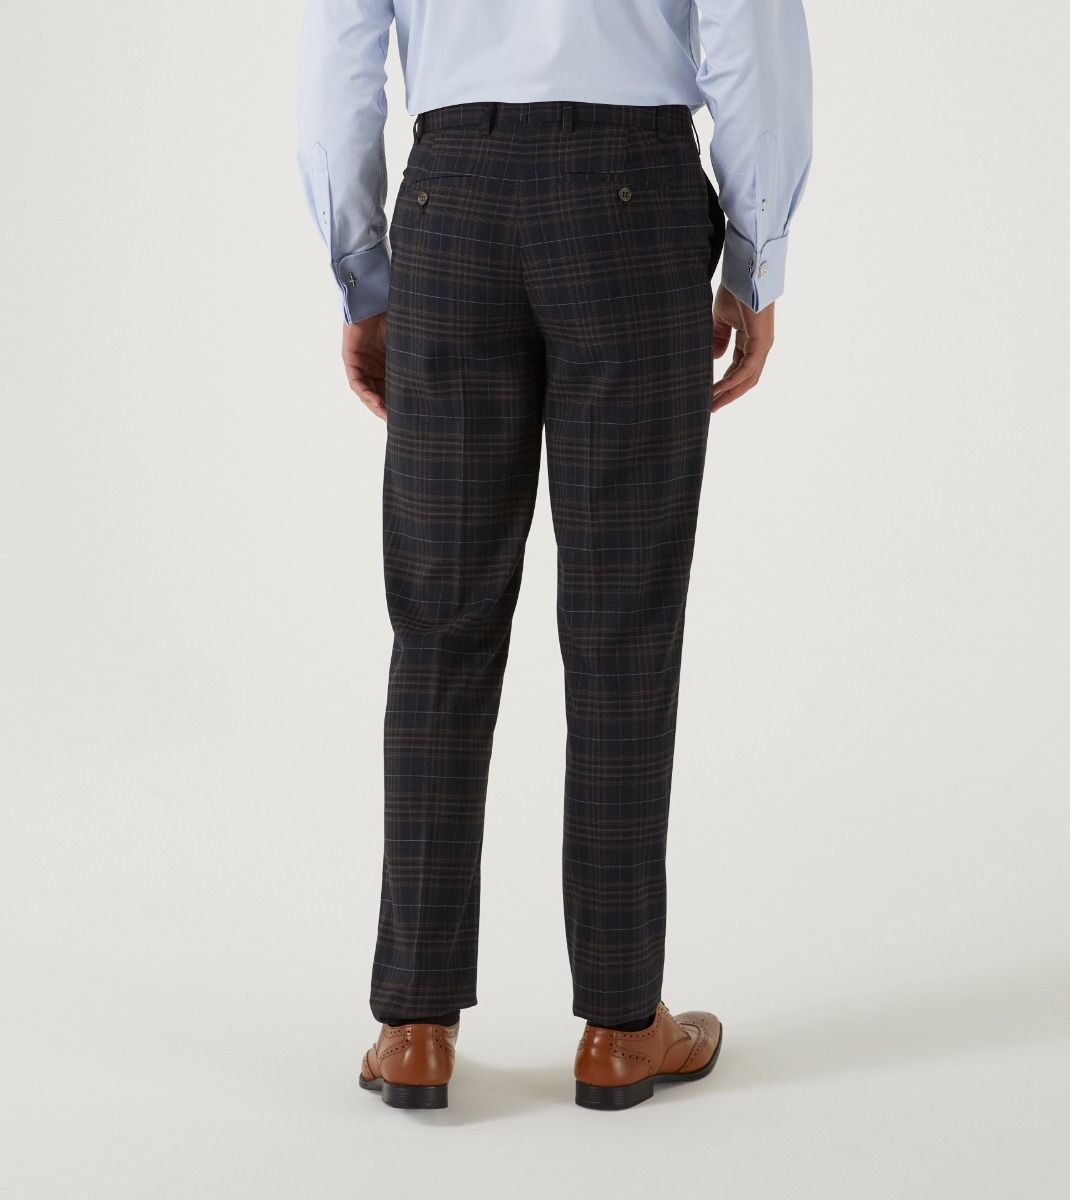 Alton Suit Black / Brown / Blue Check - Trousers